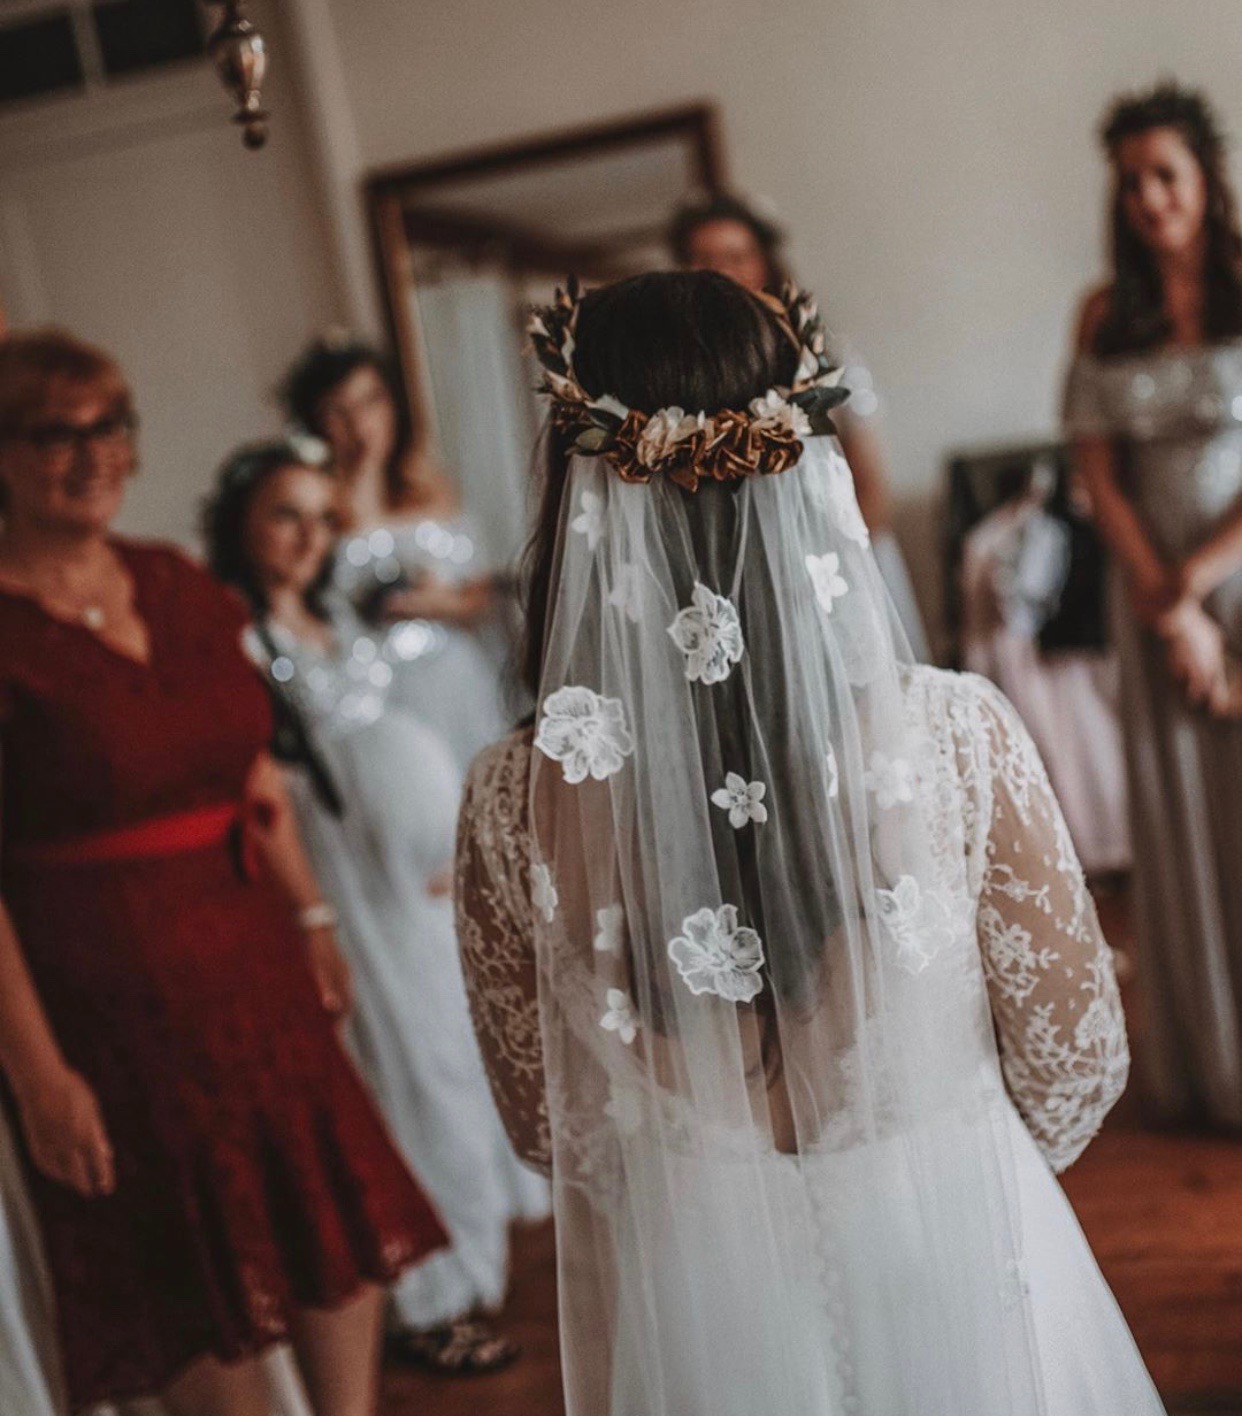 Blanc Mariée coiffure avec filet Veil tissu en dentelle enterrement vie jeune fille fantaisie robe de mariage 